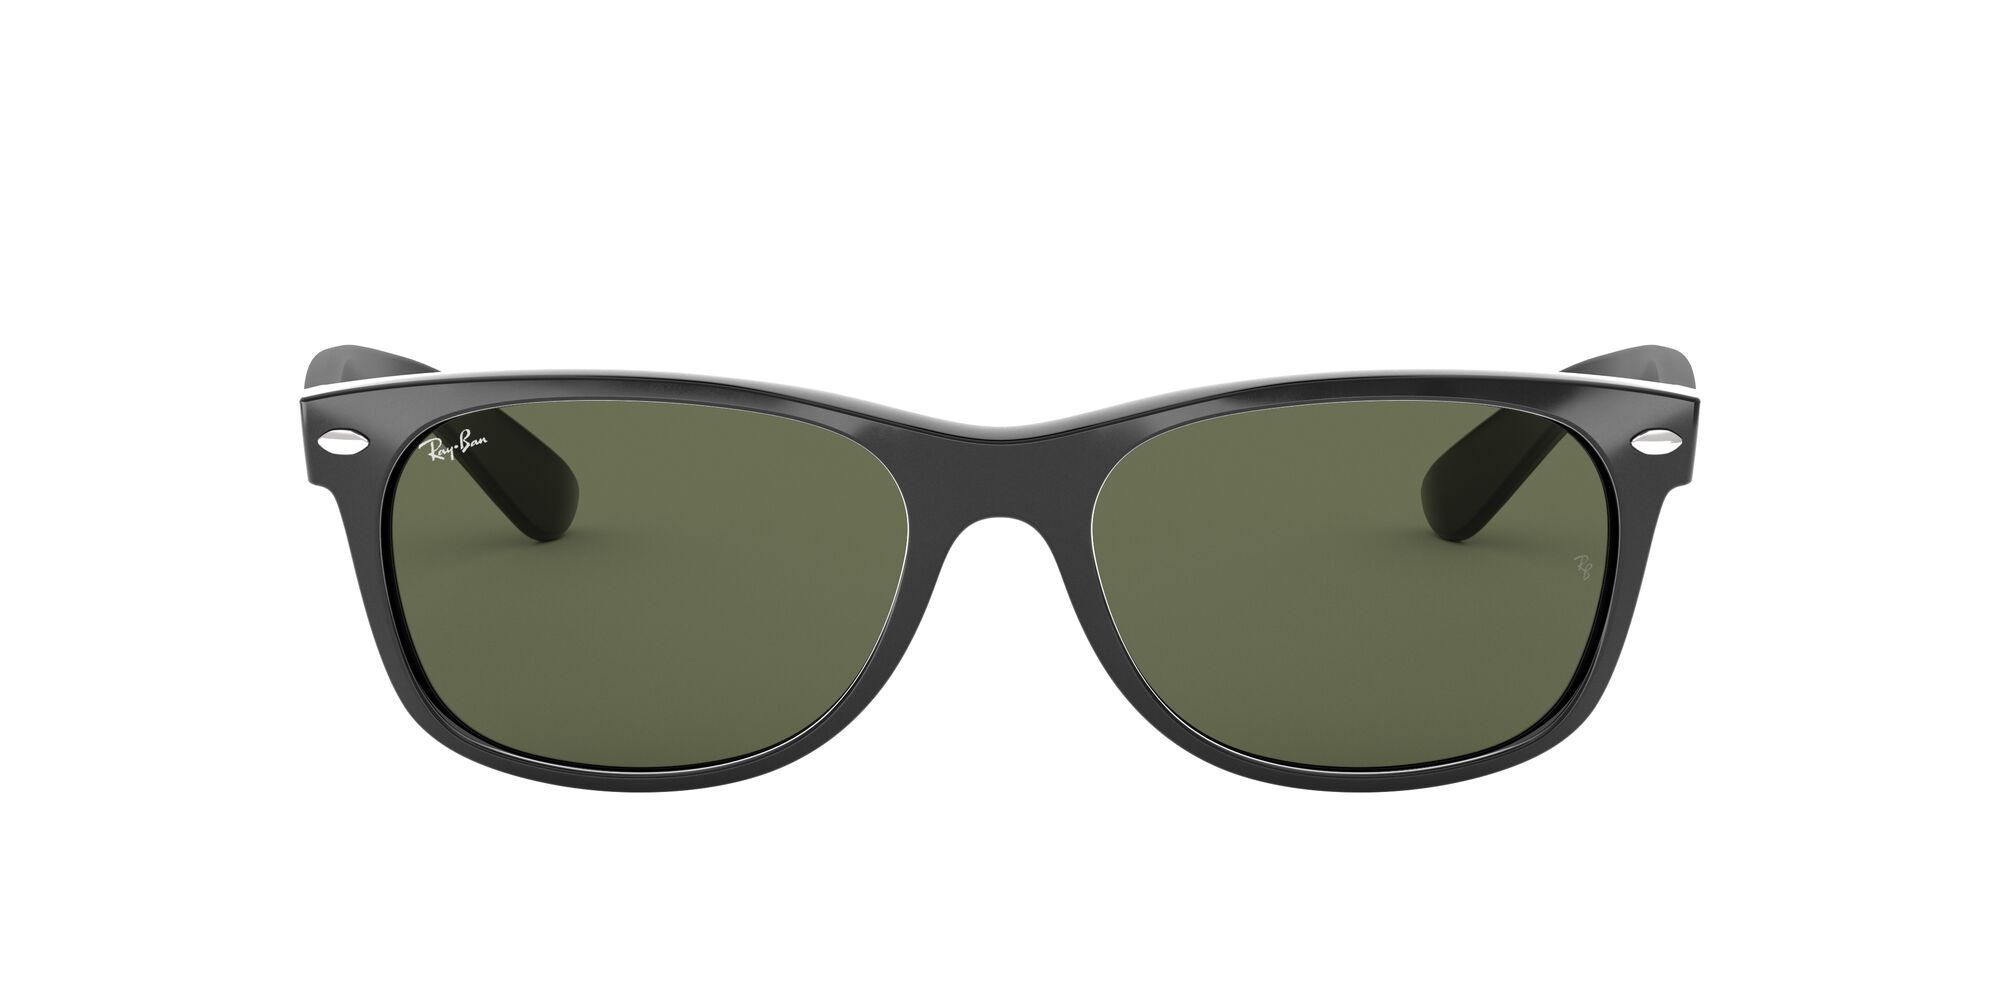 Ray-Ban RB2132 New Wayfarer Adult Sunglasses - image 1 of 12